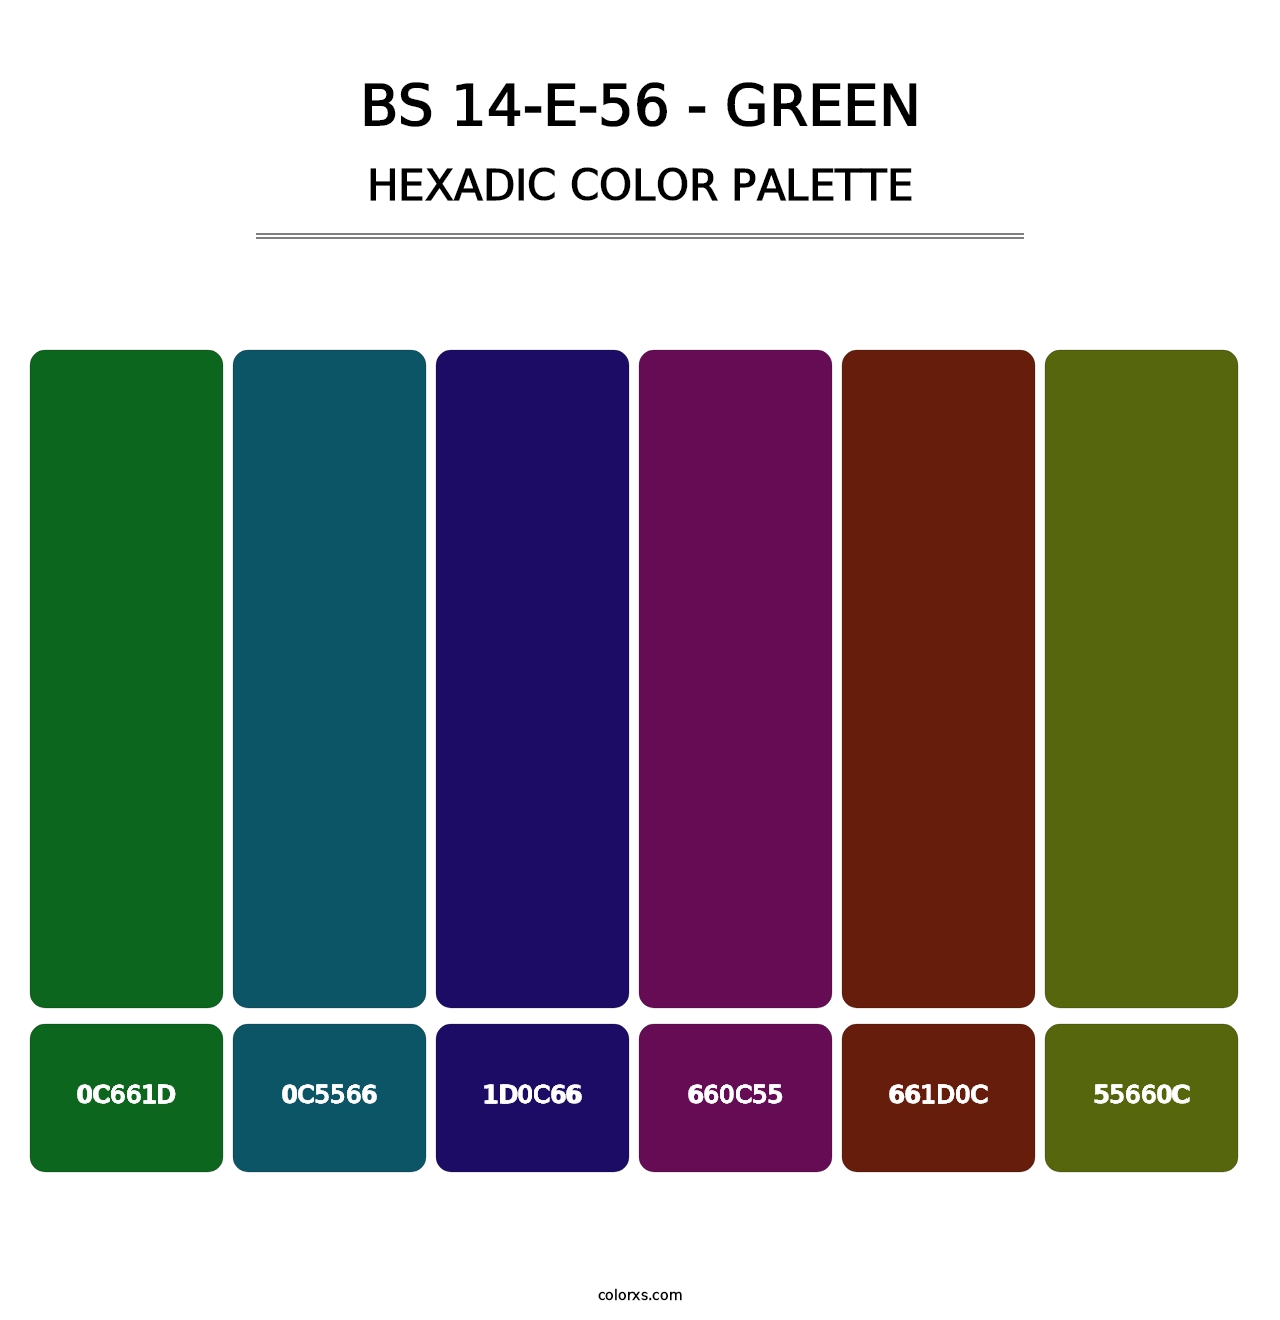 BS 14-E-56 - Green - Hexadic Color Palette